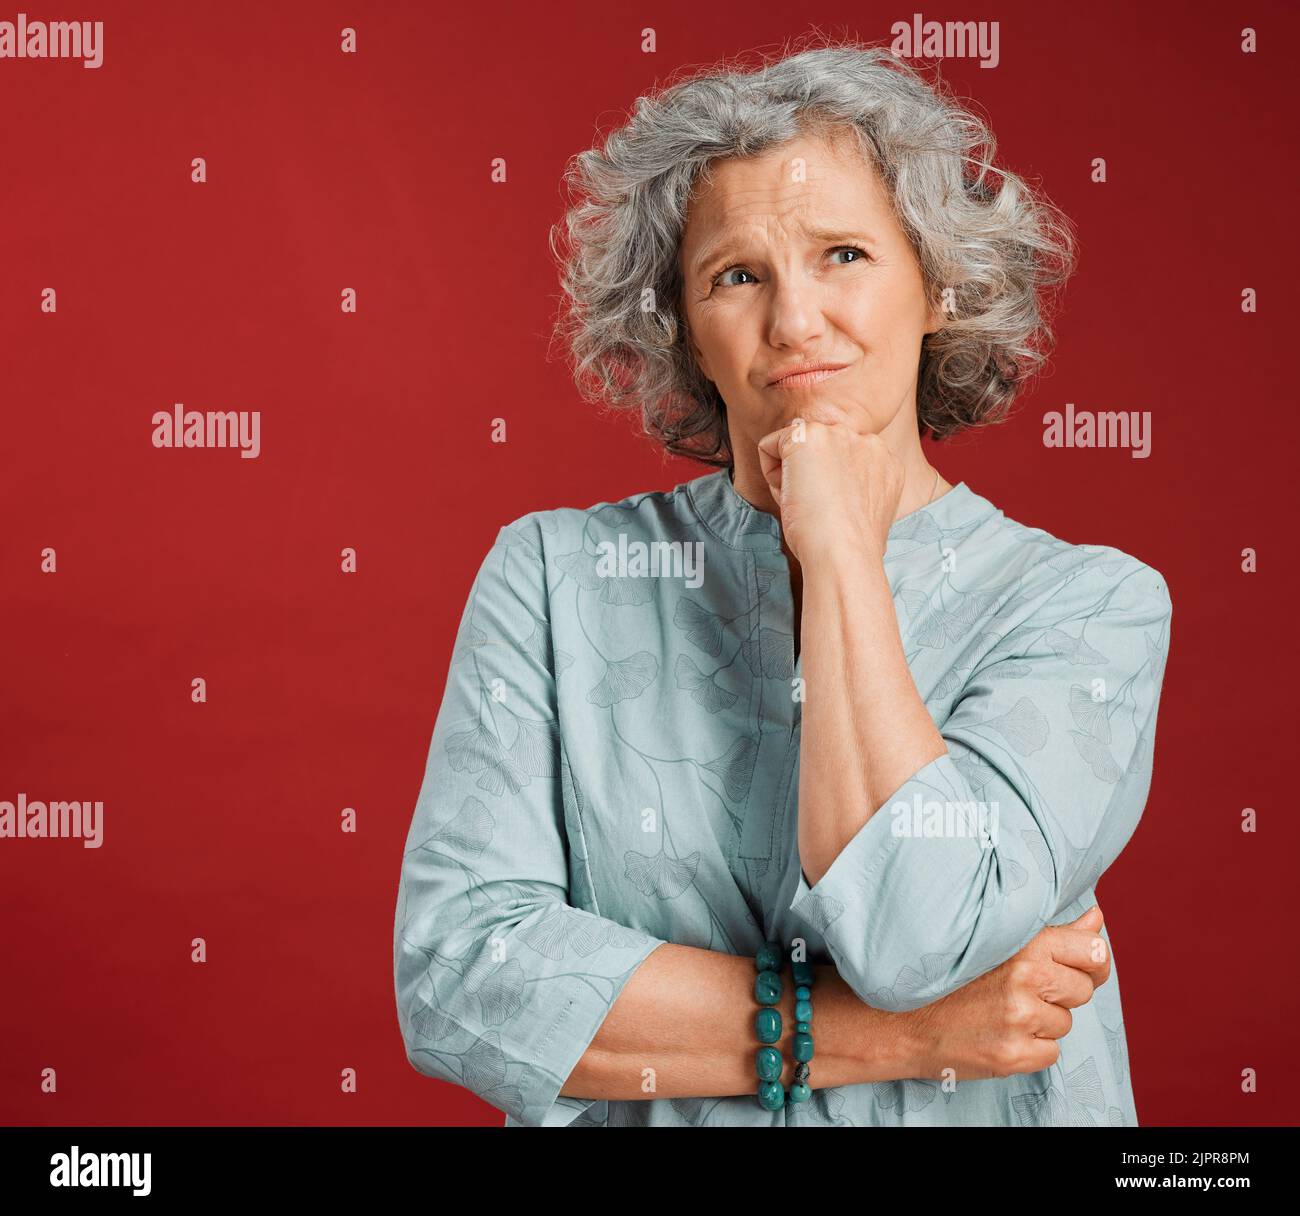 Denkende, verwirrte und wundernde Frau, die verwirrt, unsicher und unsicher über Wahl, Entscheidung und Idee vor dem Hintergrund des Studio-roten Hintergrunds aussahen Stockfoto